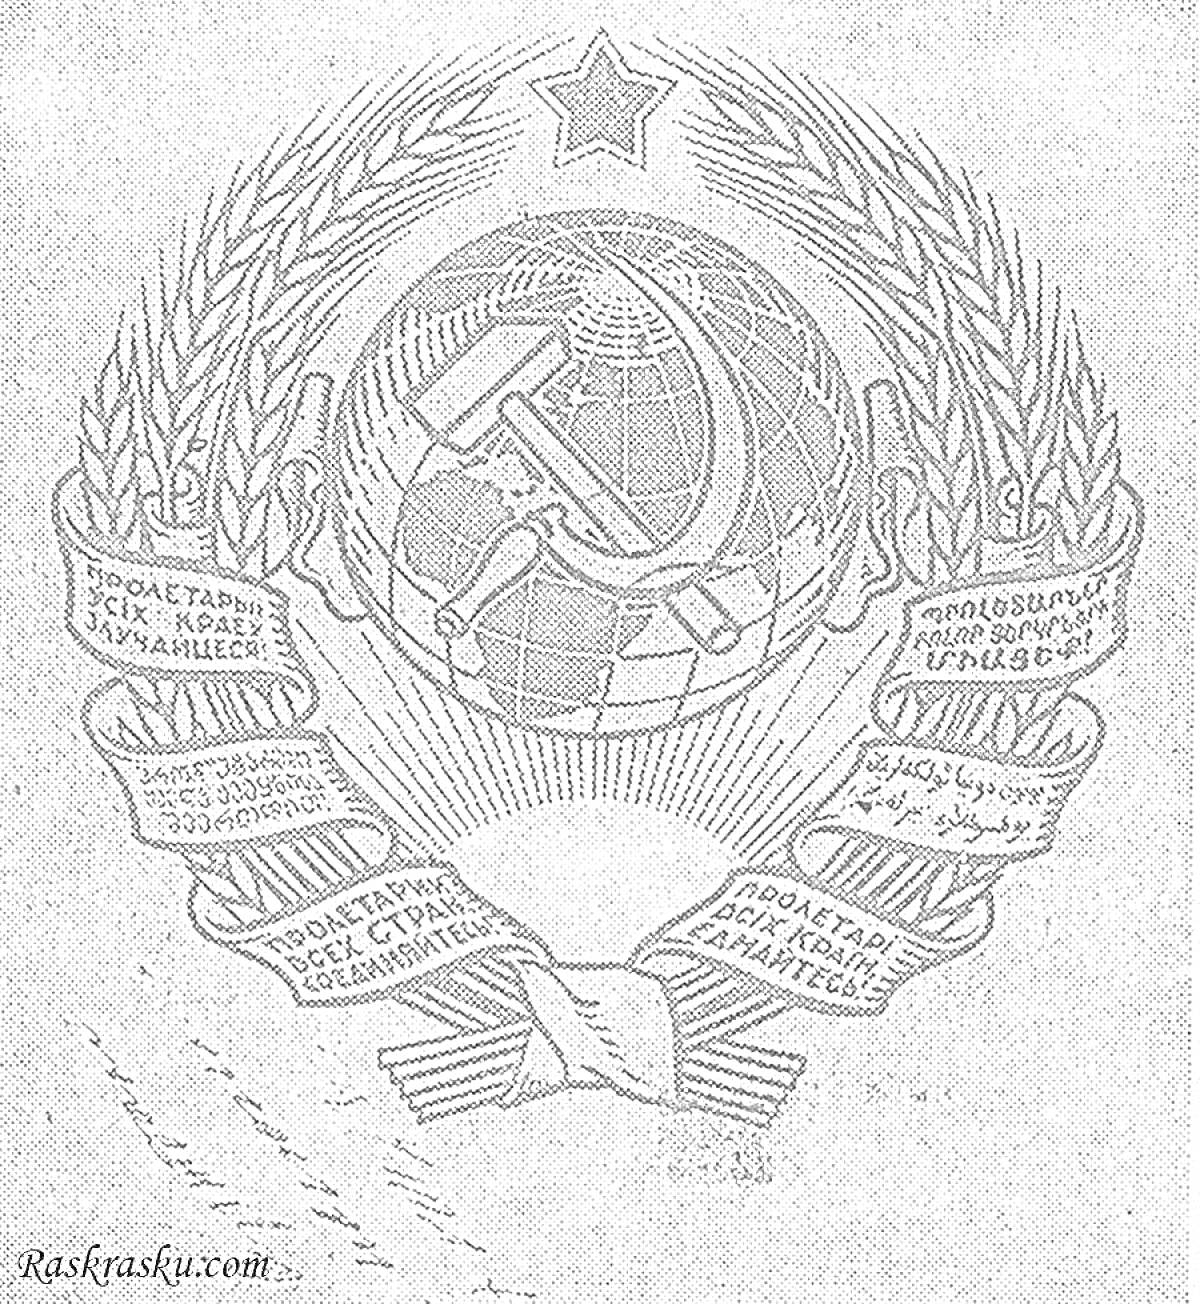 Раскраска Герб СССР - серп и молот на фоне глобуса, звезда, колосья пшеницы, баннер с надписями на разных языках, лента